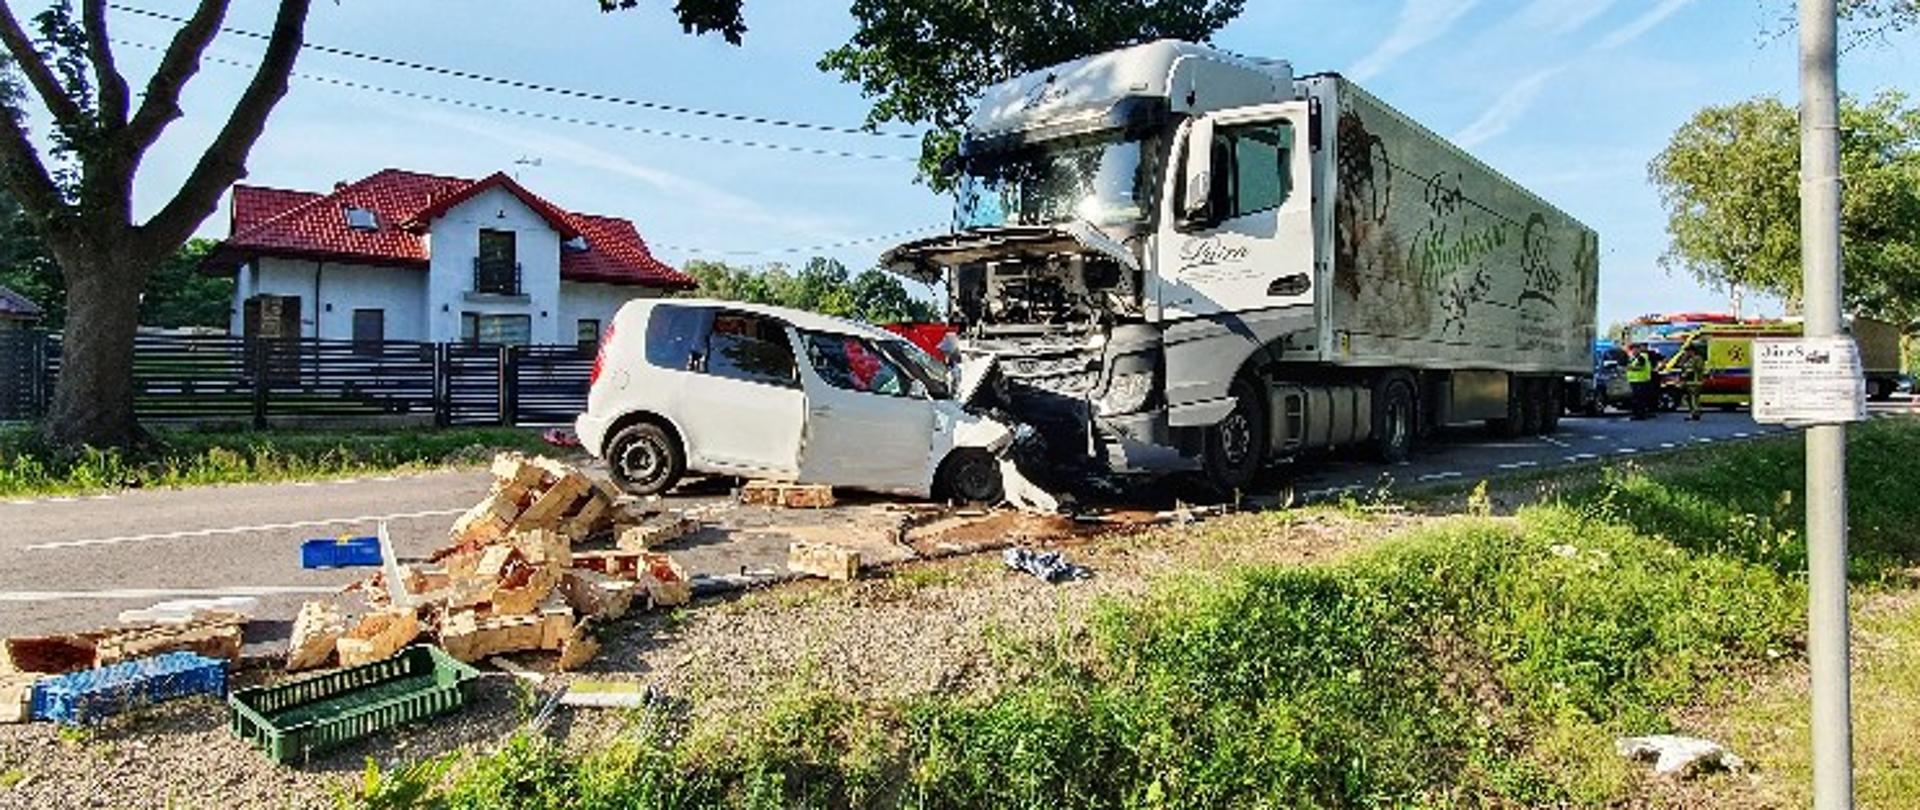 20 lipca 2022 roku w miejscowości Pieńki (gm. Mordy) doszło do tragicznego w skutkach wypadku z udziałem samochodu osobowego oraz samochodu ciężarowego.